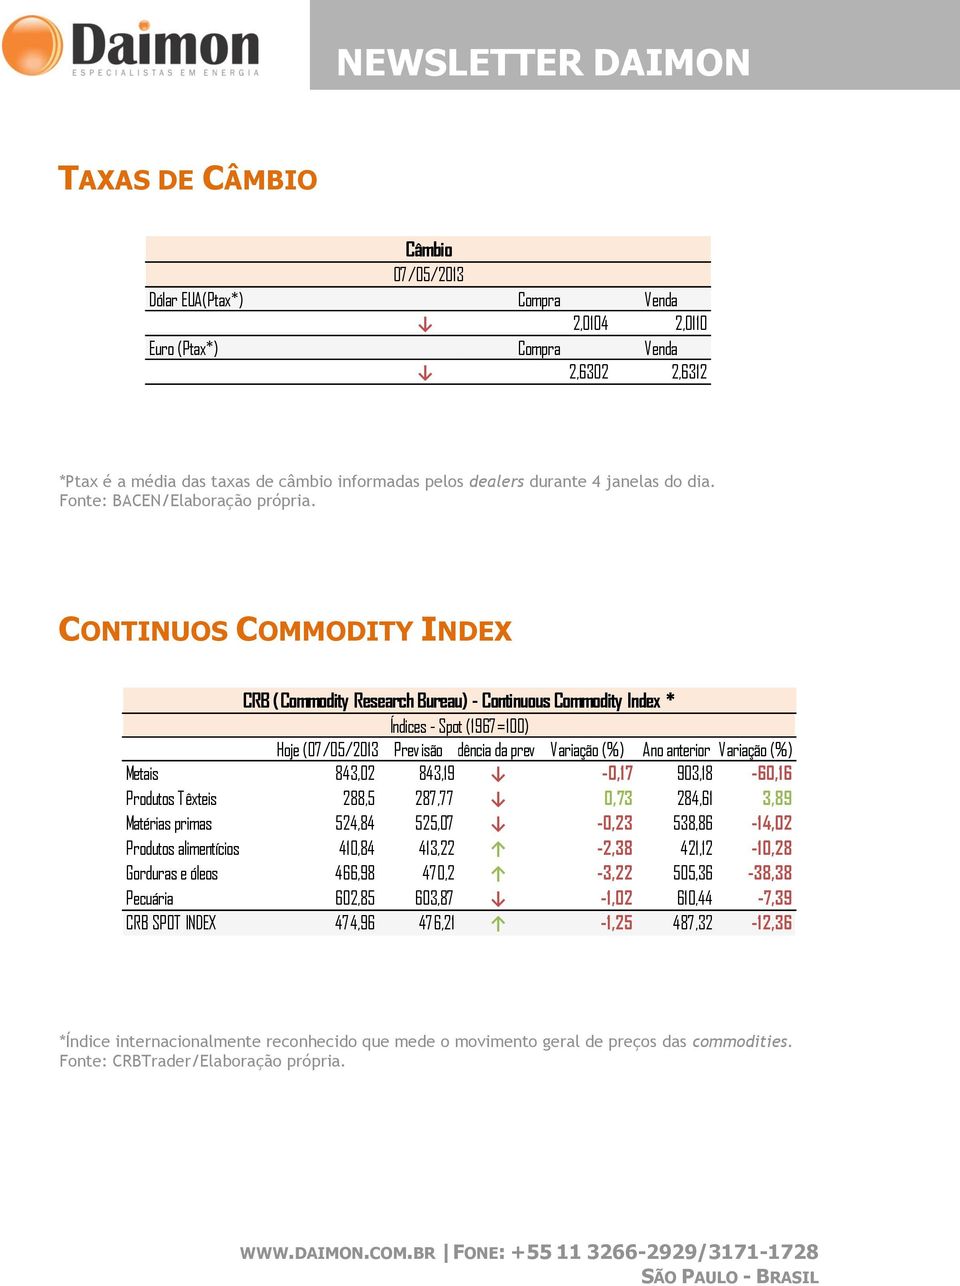 CONTINUOS COMMODITY INDEX CRB (Commodity Research Bureau) - Continuous Commodity Index * Índices - Spot (1967=100) Hoje (07/05/2013) PrevisãoTendência da previsãovariação (%) Ano anterior Variação